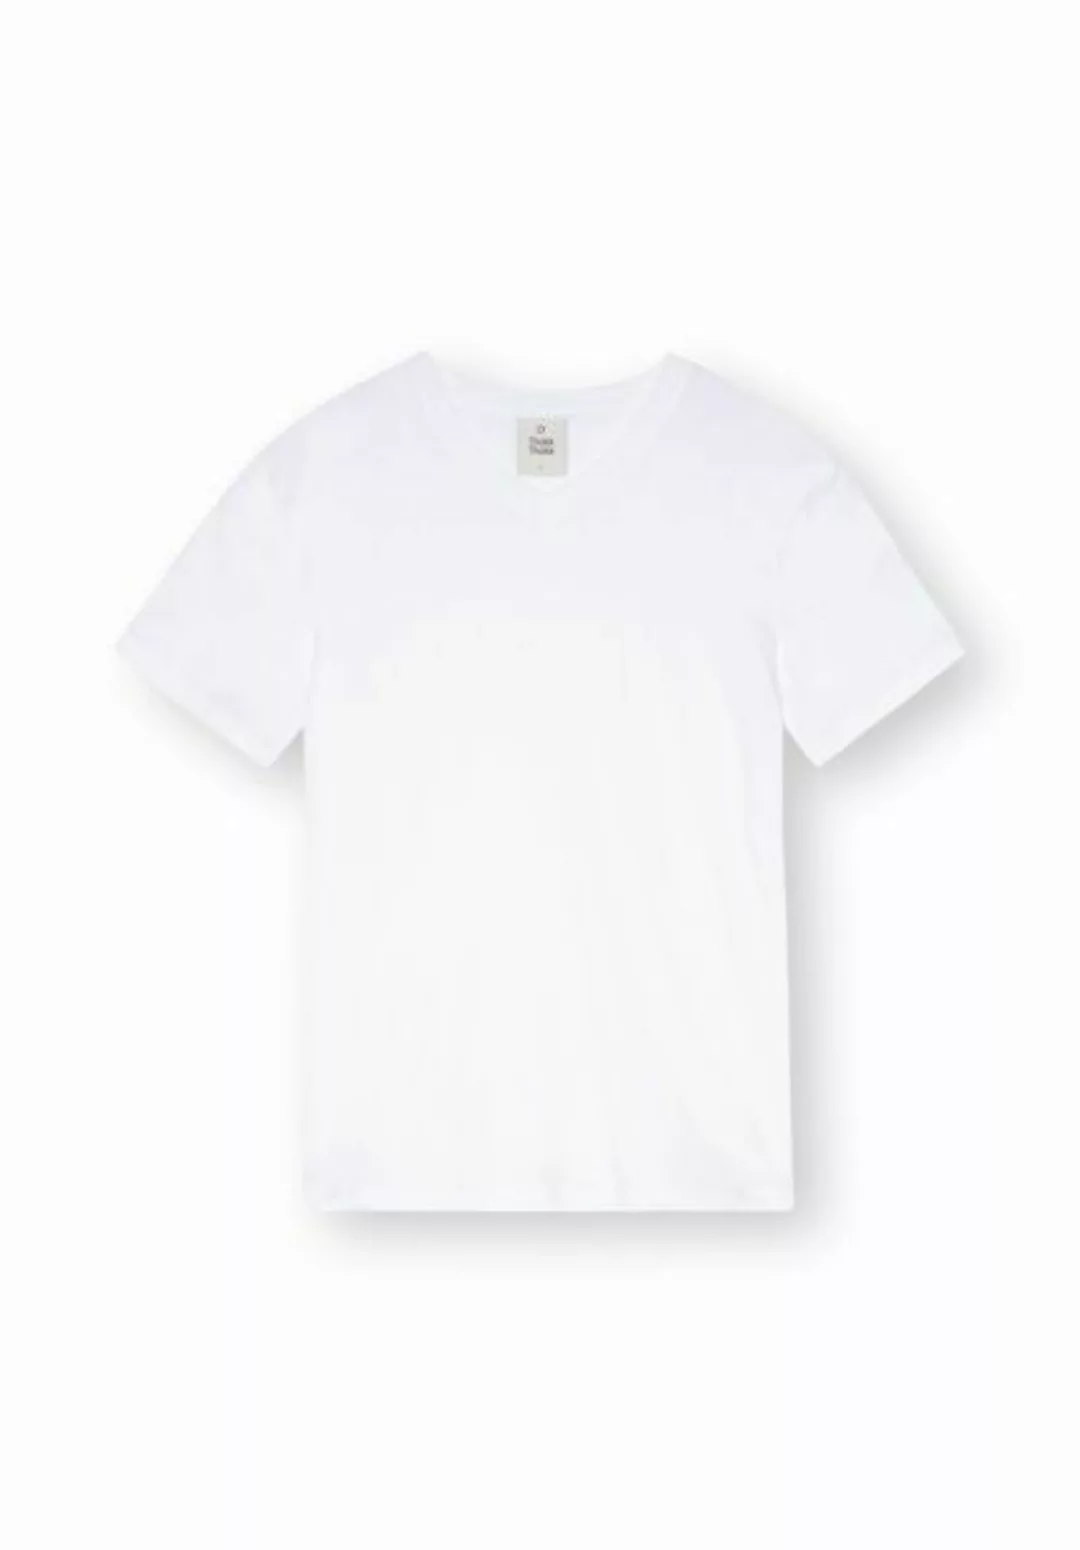 Herren V-neck T-shirt Aus Biobaumwolle günstig online kaufen